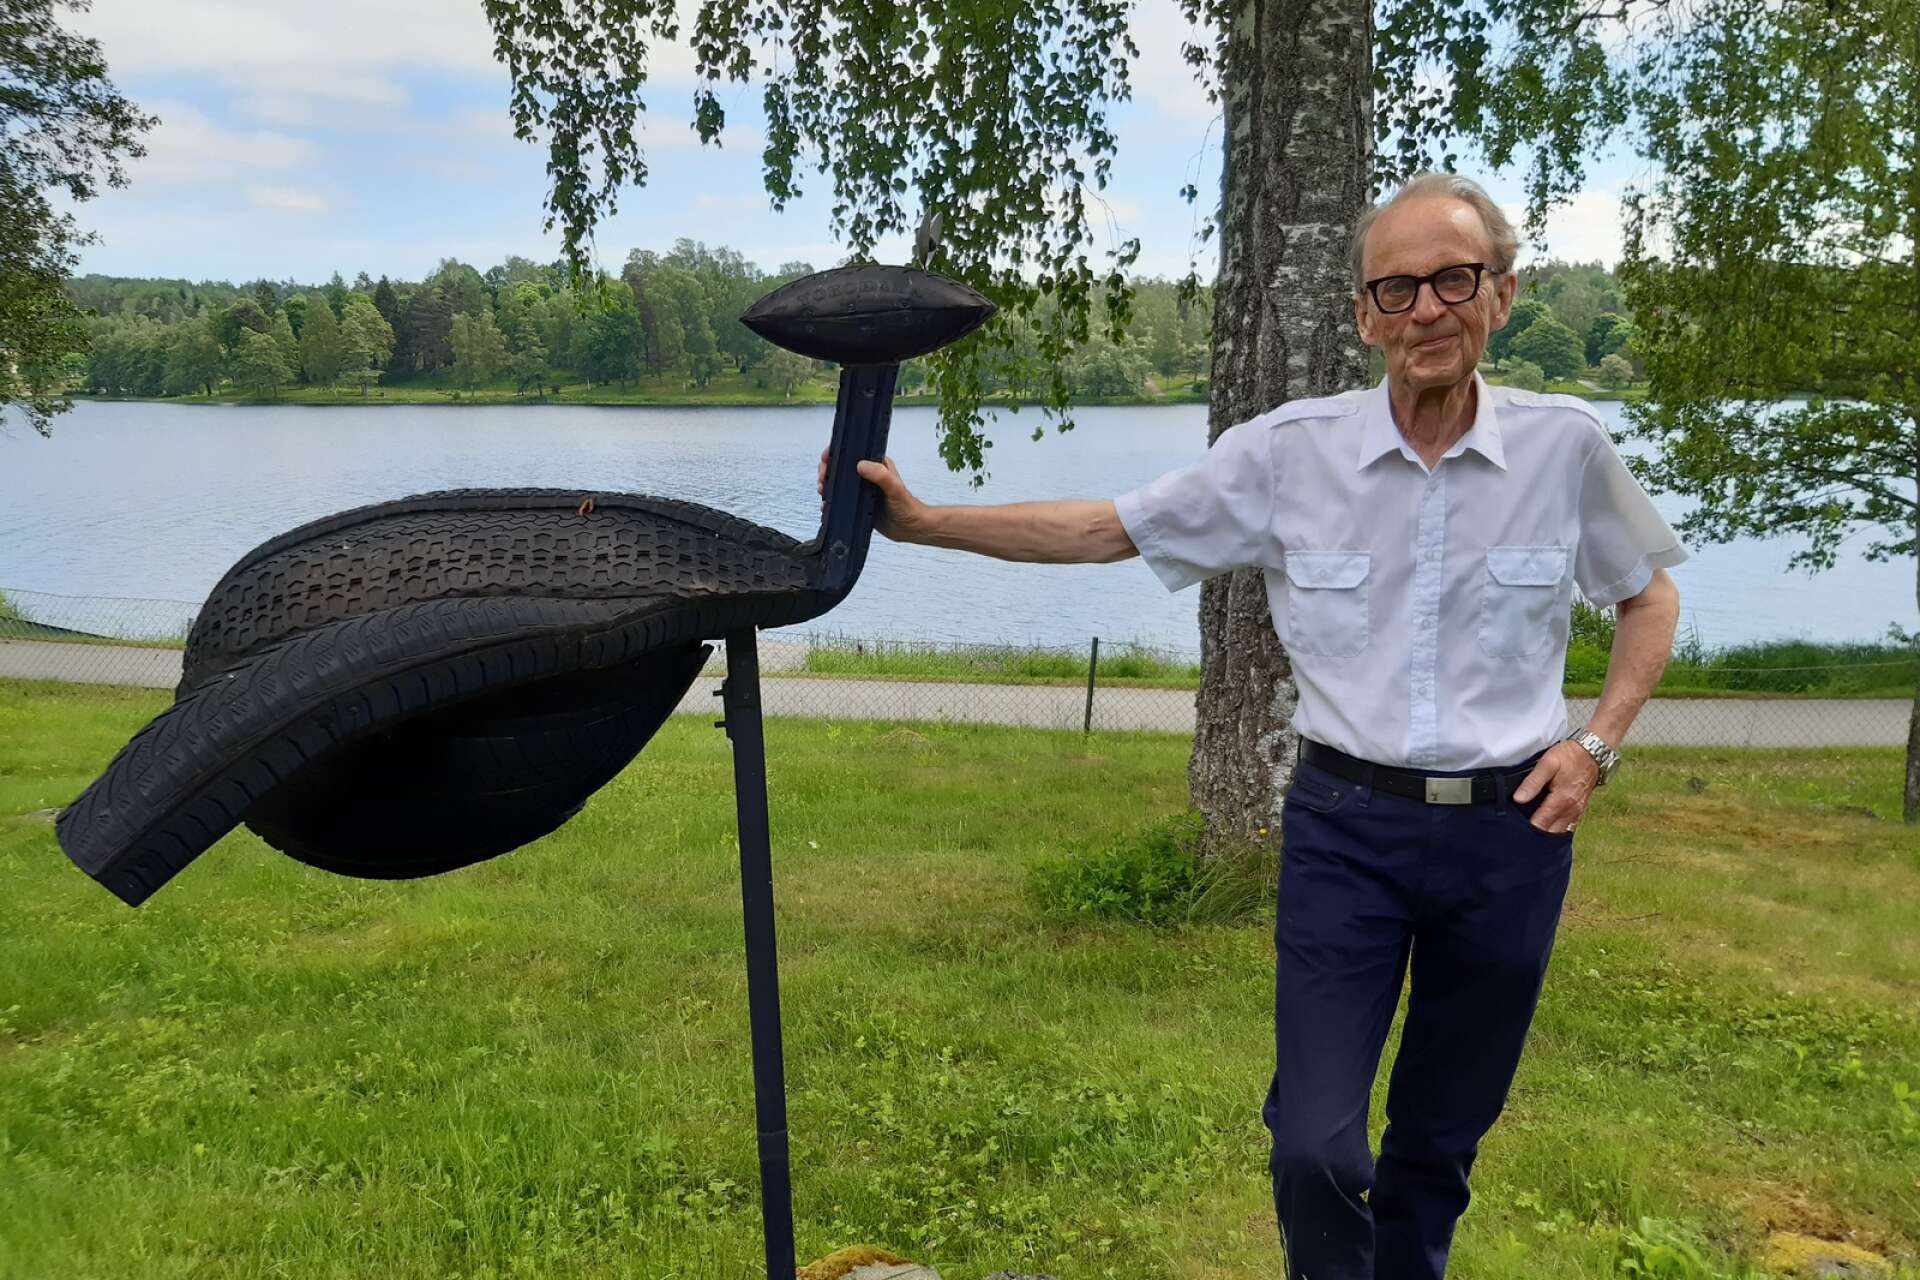 Den 30 september är det vernissage på årets höstsalong i Rackstadmuseet i Arvika. Filipstadskonstnären Nils Johannesson har blivit antagen och ställer ut verket ”It’s all that there is”. Här ses han med ett av sina fantastiska verk hemma i sin spännande trädgård.